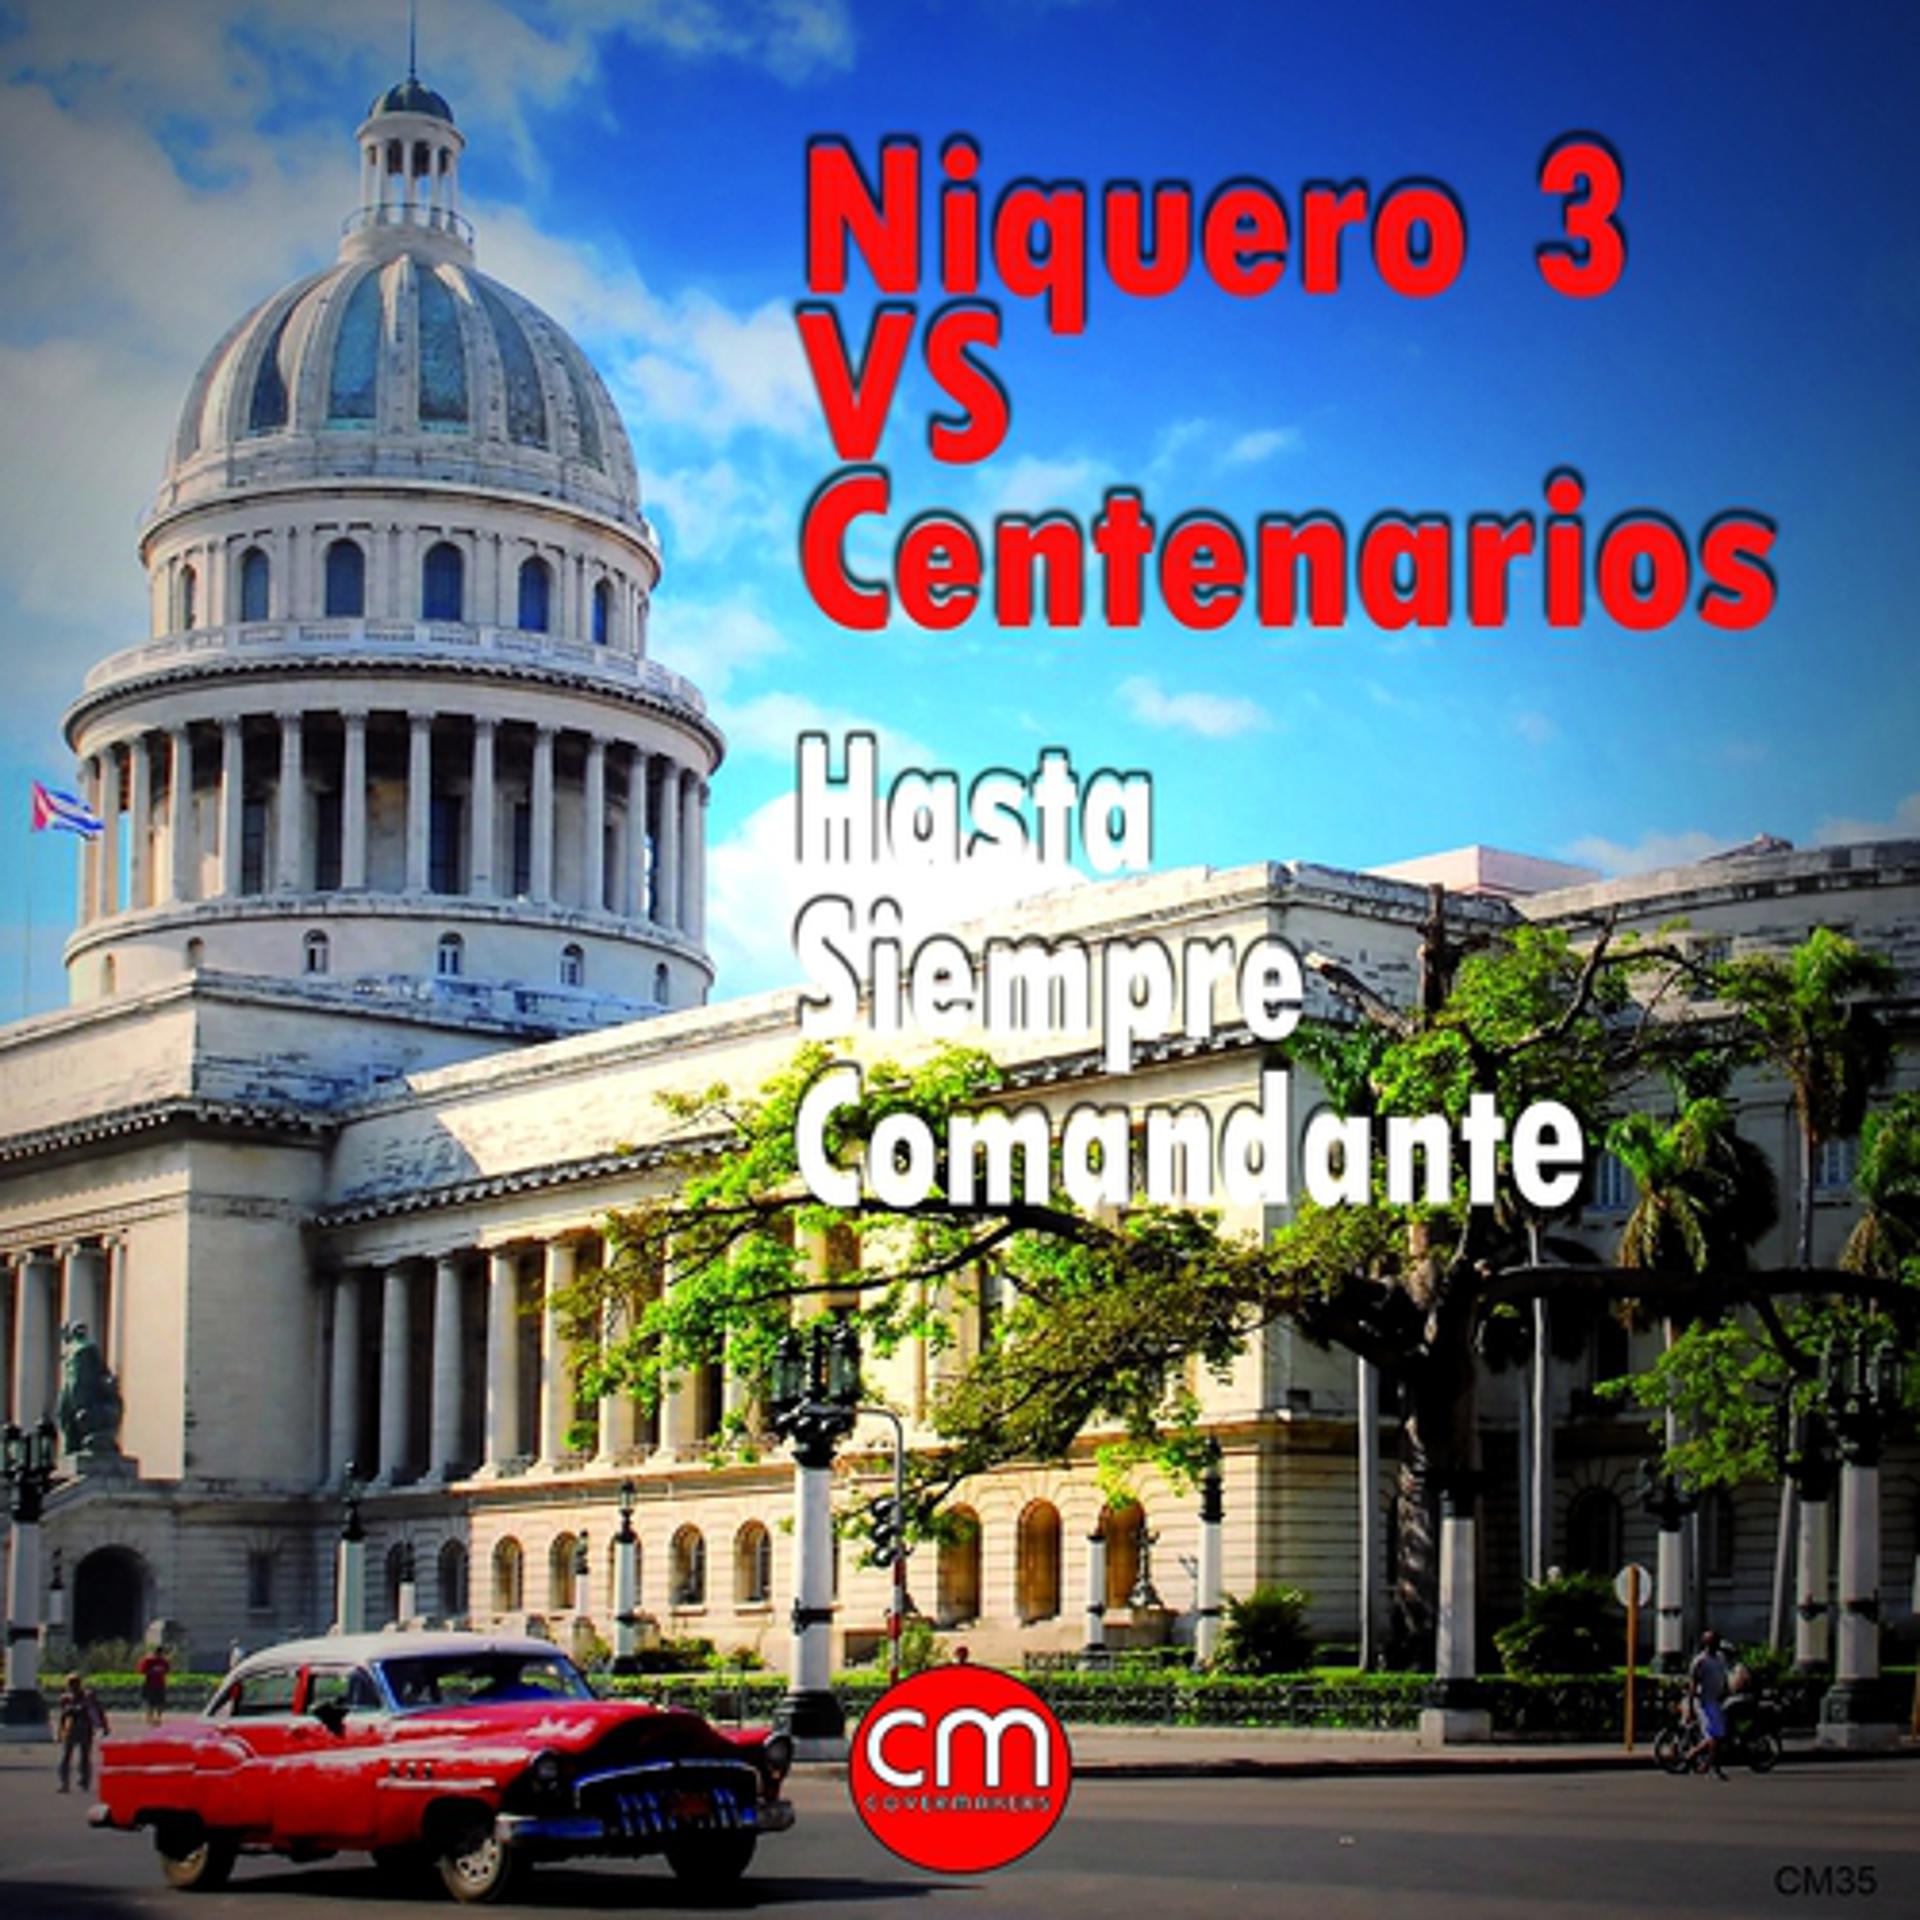 Постер альбома Hasta Siempre Comandante